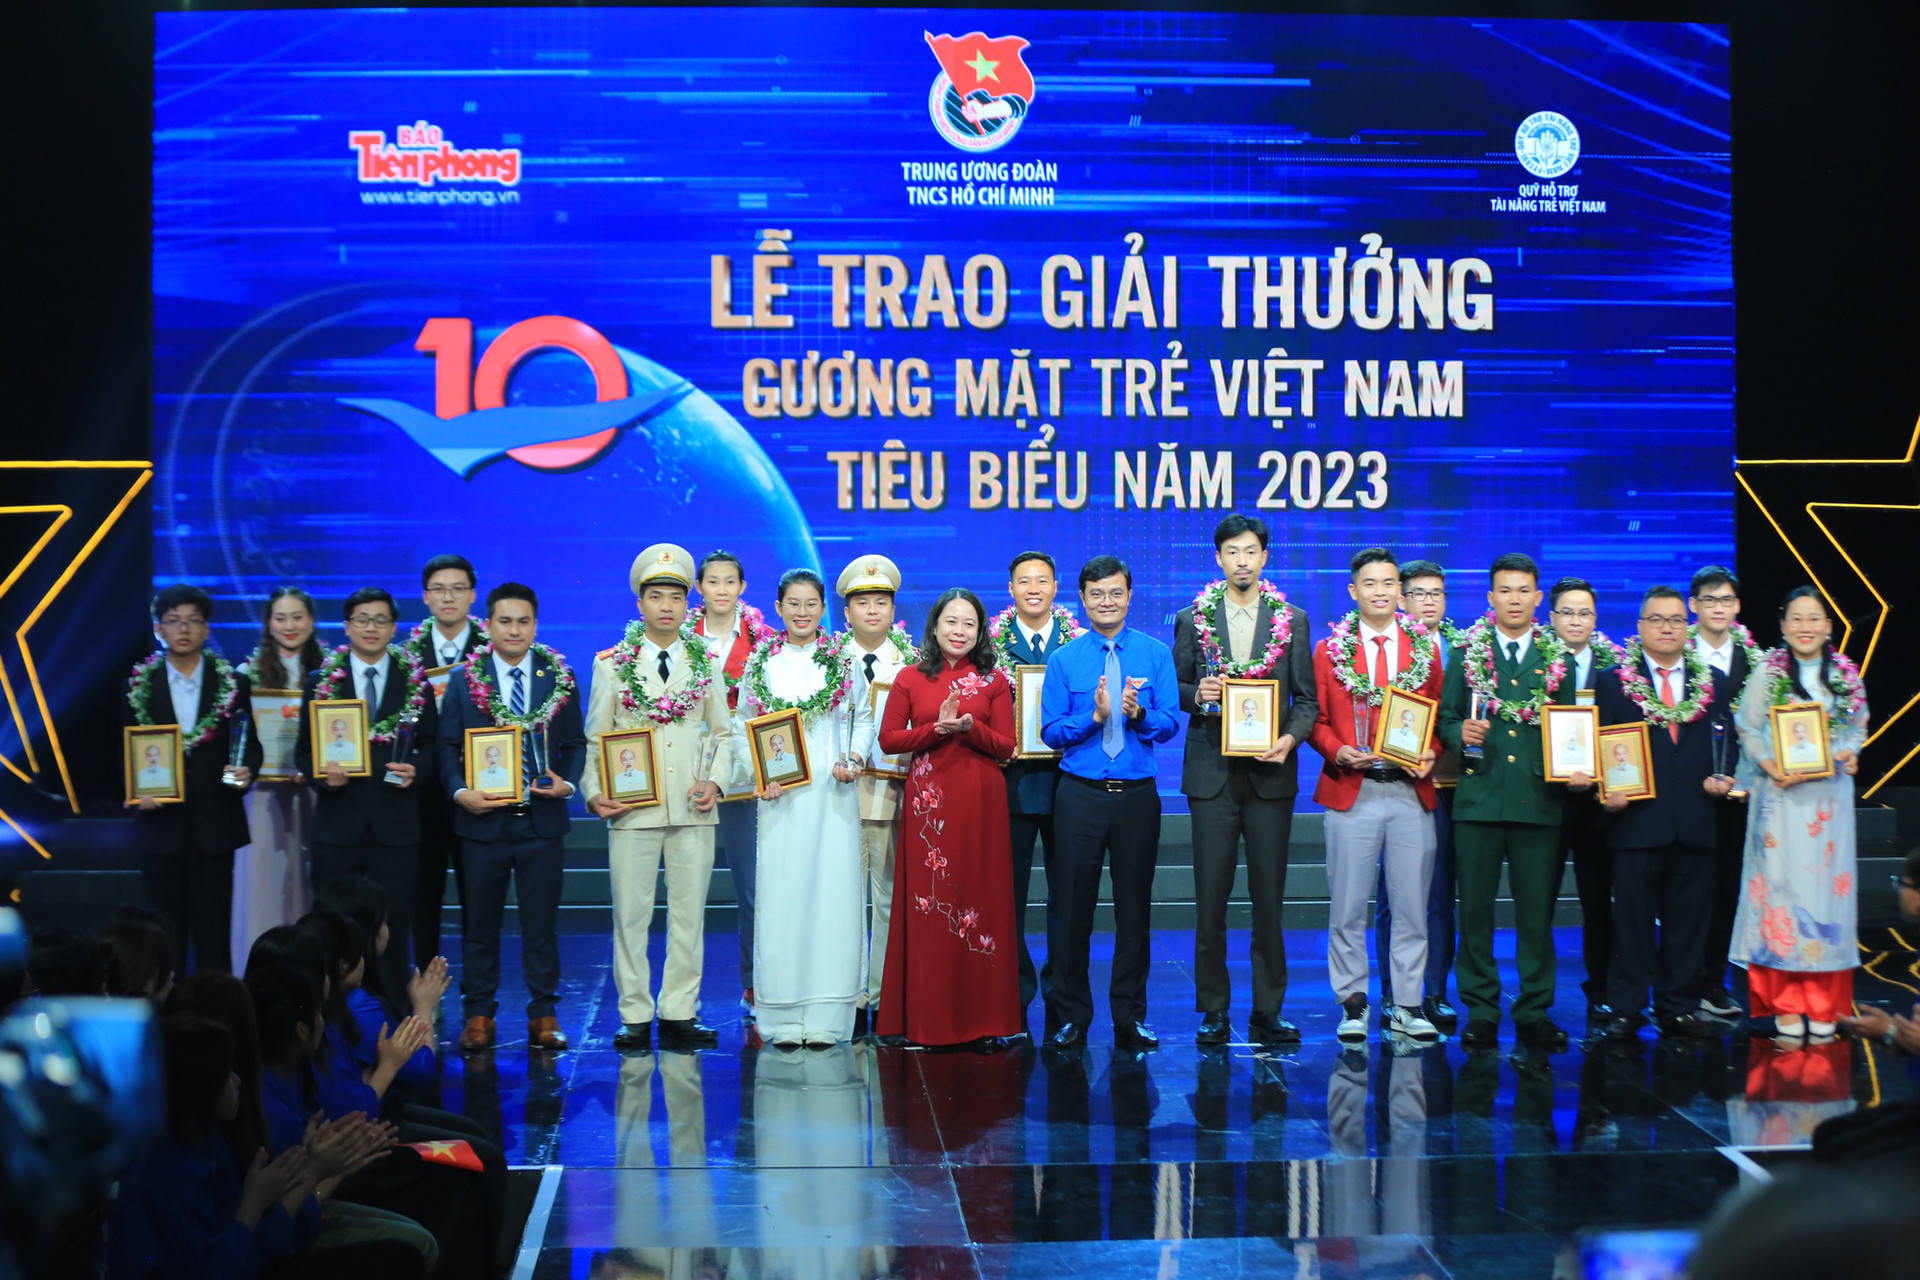 Quyền Chủ tịch nước Võ Thị Ánh Xuân và anh Bùi Quang Huy - bí thư thứ nhất Trung ương Đoàn - trao giải thưởng Gương mặt trẻ Việt Nam tiêu biểu năm 2023 - Ảnh: DƯƠNG TRIỀU